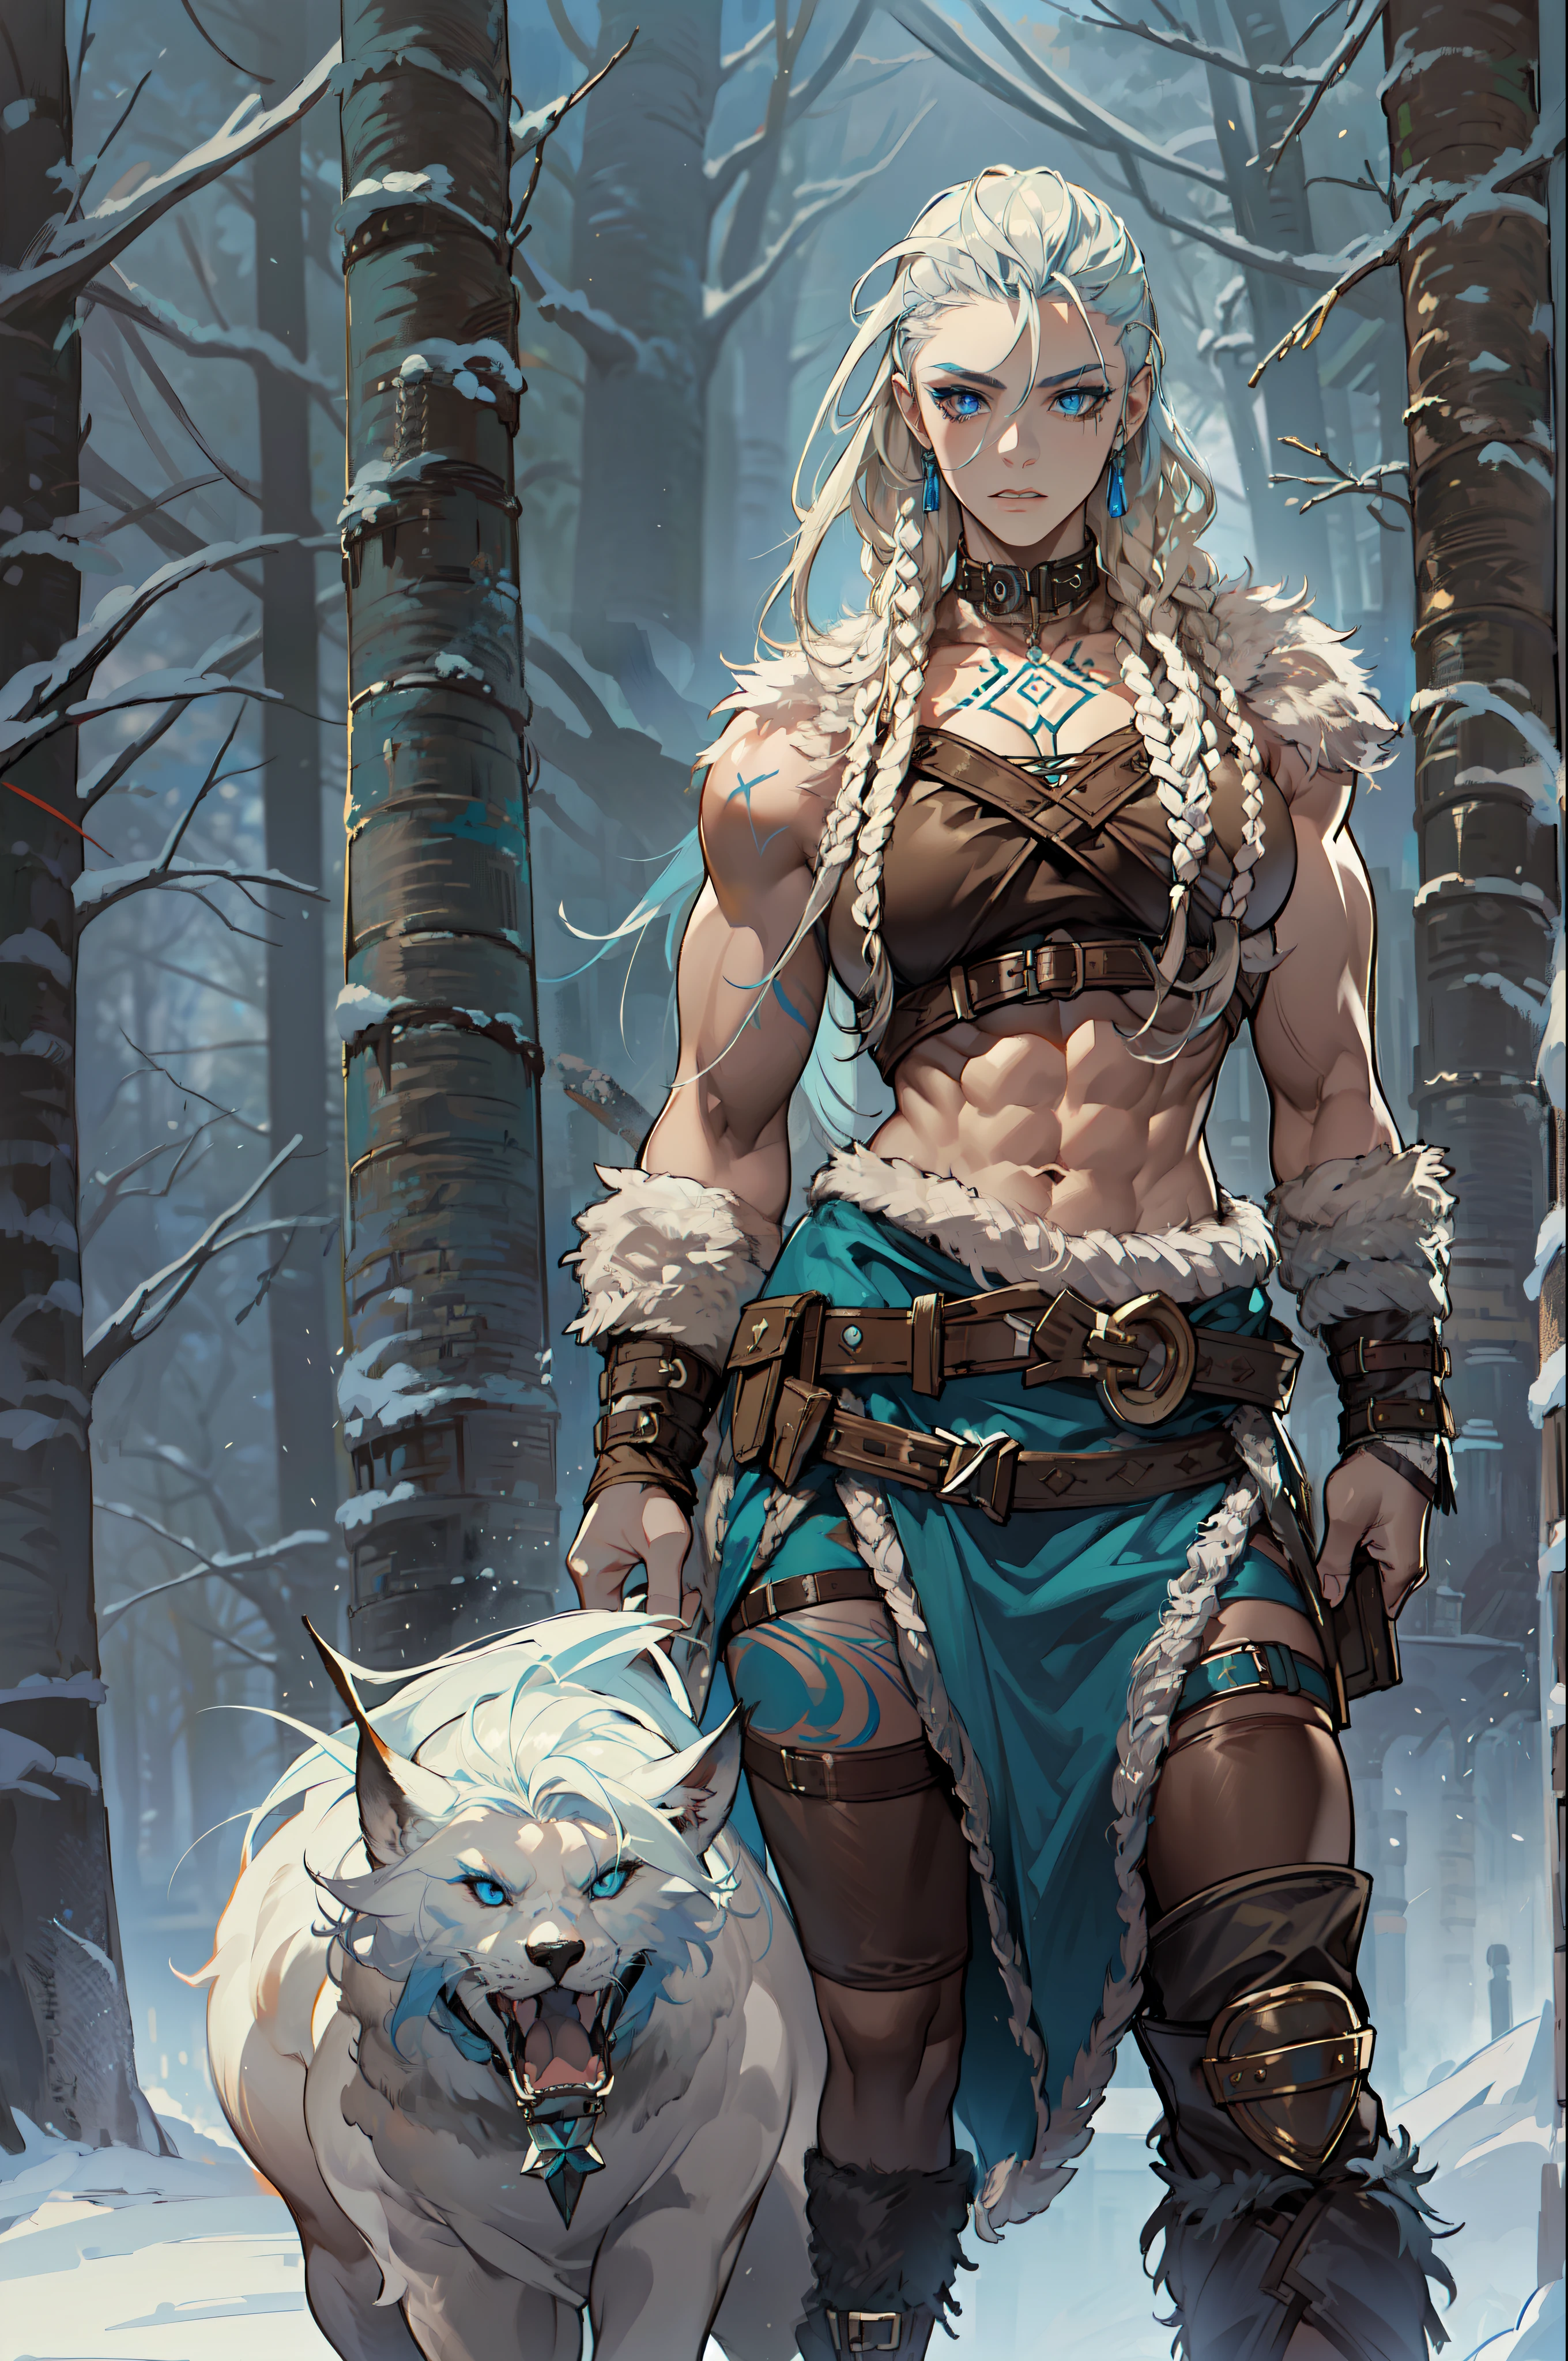 solo Femme viking, (jeune:1.2), (musclé:1.2), ajuster, porter des fourrures et des peaux brunes, (porter des fourrures:1.3) (blue norrois tattoos:1.2), yeux bleus, Cheveux blond platine, (dreadlocks:1.7), (redoute:1.4), (Rasage latéral:1.6), cheveux de guerrier, Le décor est une forêt scandinave en hiver, neige, bras nus, navale exposée, (abdos:1.2). très détaillé, norrois, berserker, muscles des bras, muscles des jambes, (volumineux:1.2), lanières de cuir, (Gros seins:1.3), taille haute, taille large, trapu, (grand:1.4)